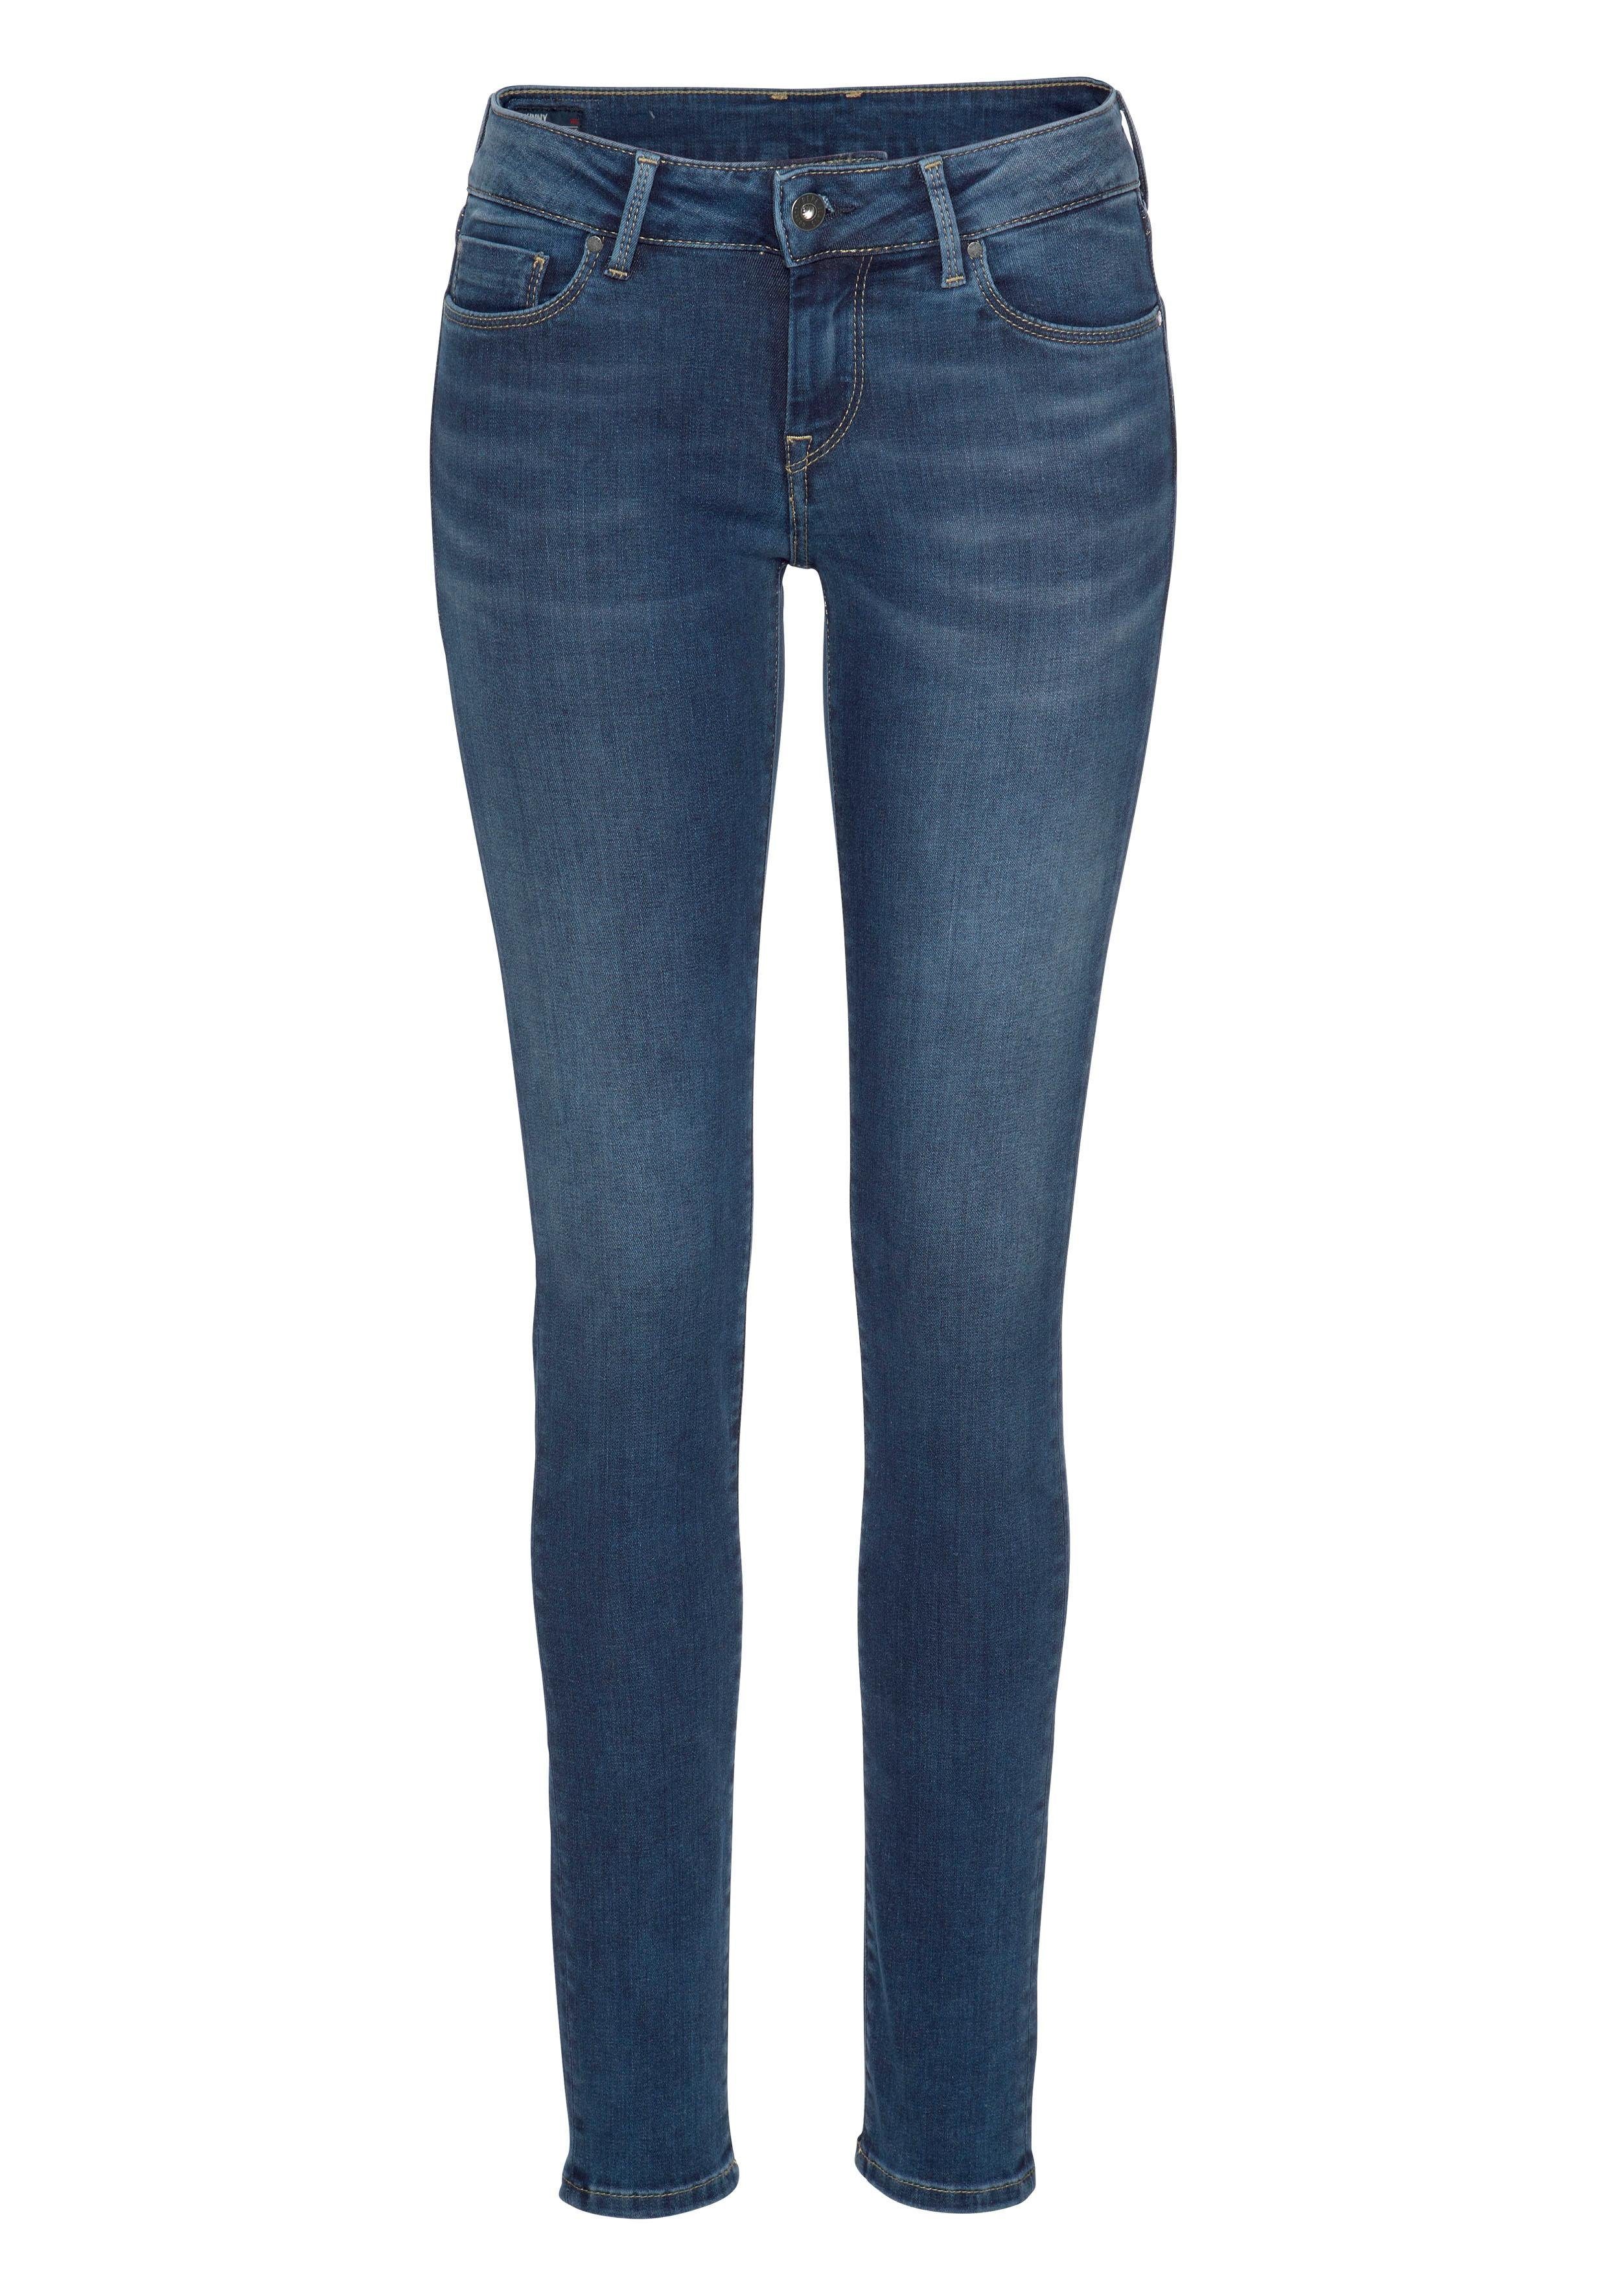 im Z63 Jeans Skinny-fit-Jeans SOHO Stretch-Anteil 5-Pocket-Stil 1-Knopf Bund stretch classic und Pepe mit